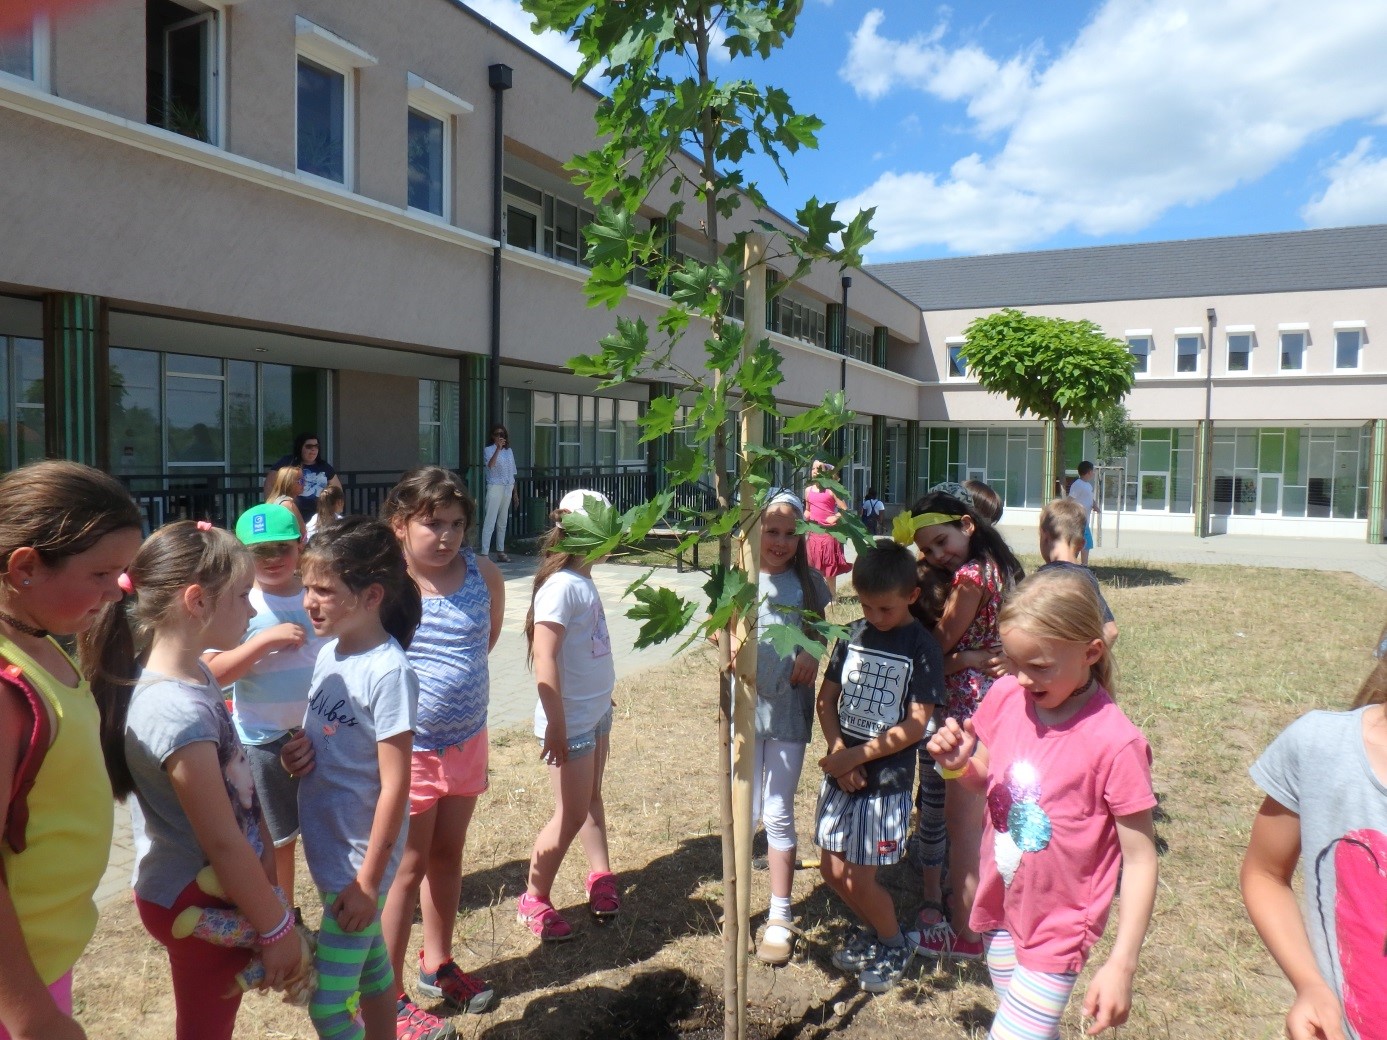 Iskolaszépítési program az ÉSZAKERDŐ Zrt-vel - közeleg az Erdők Hete